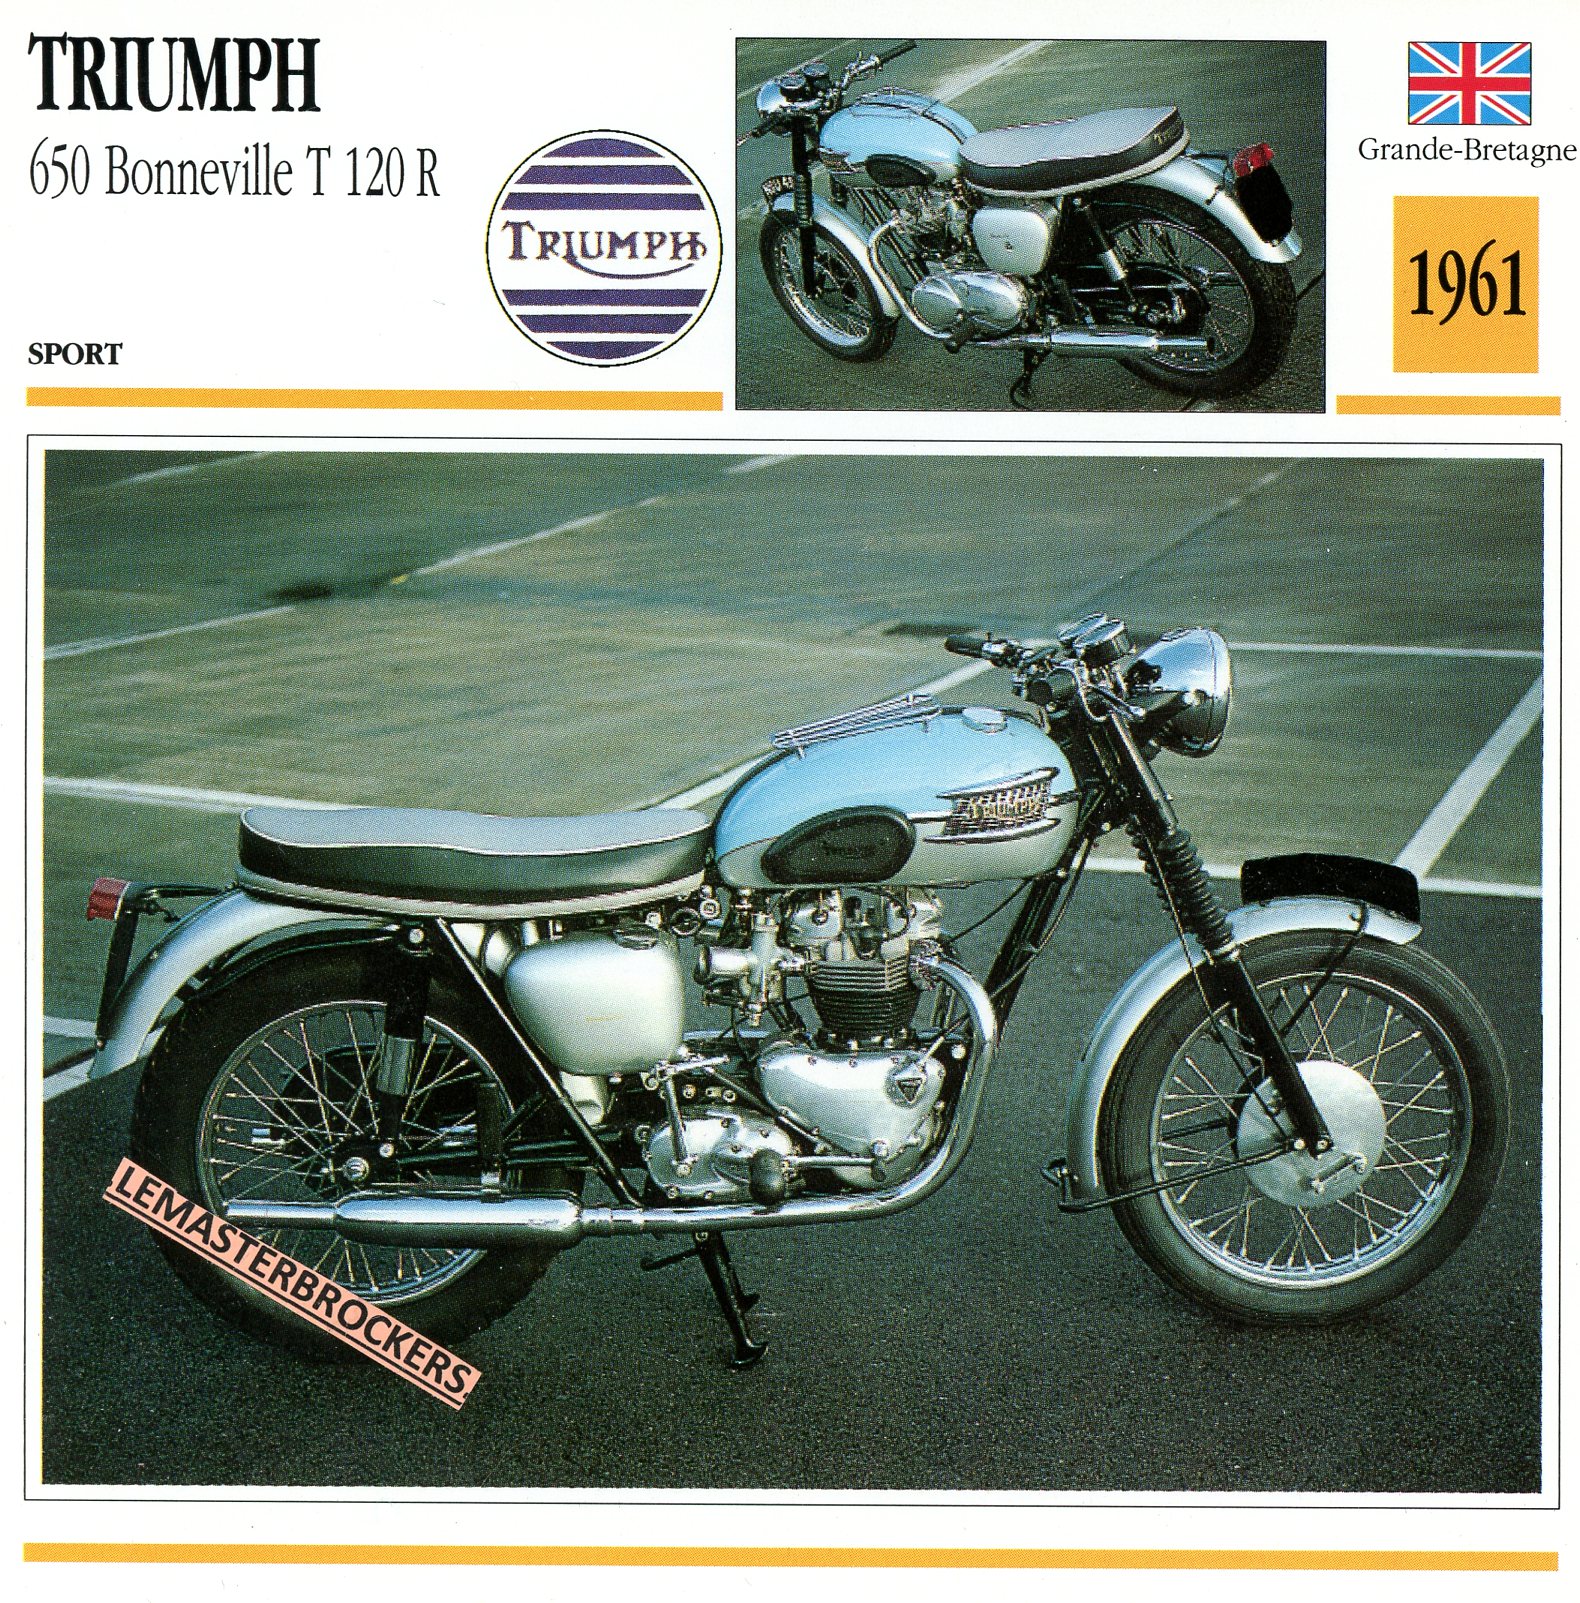 TRIUMPH-650-BONNEVILLE-T120R-1961-FICHE-MOTO-LEMASTERBROCKERS